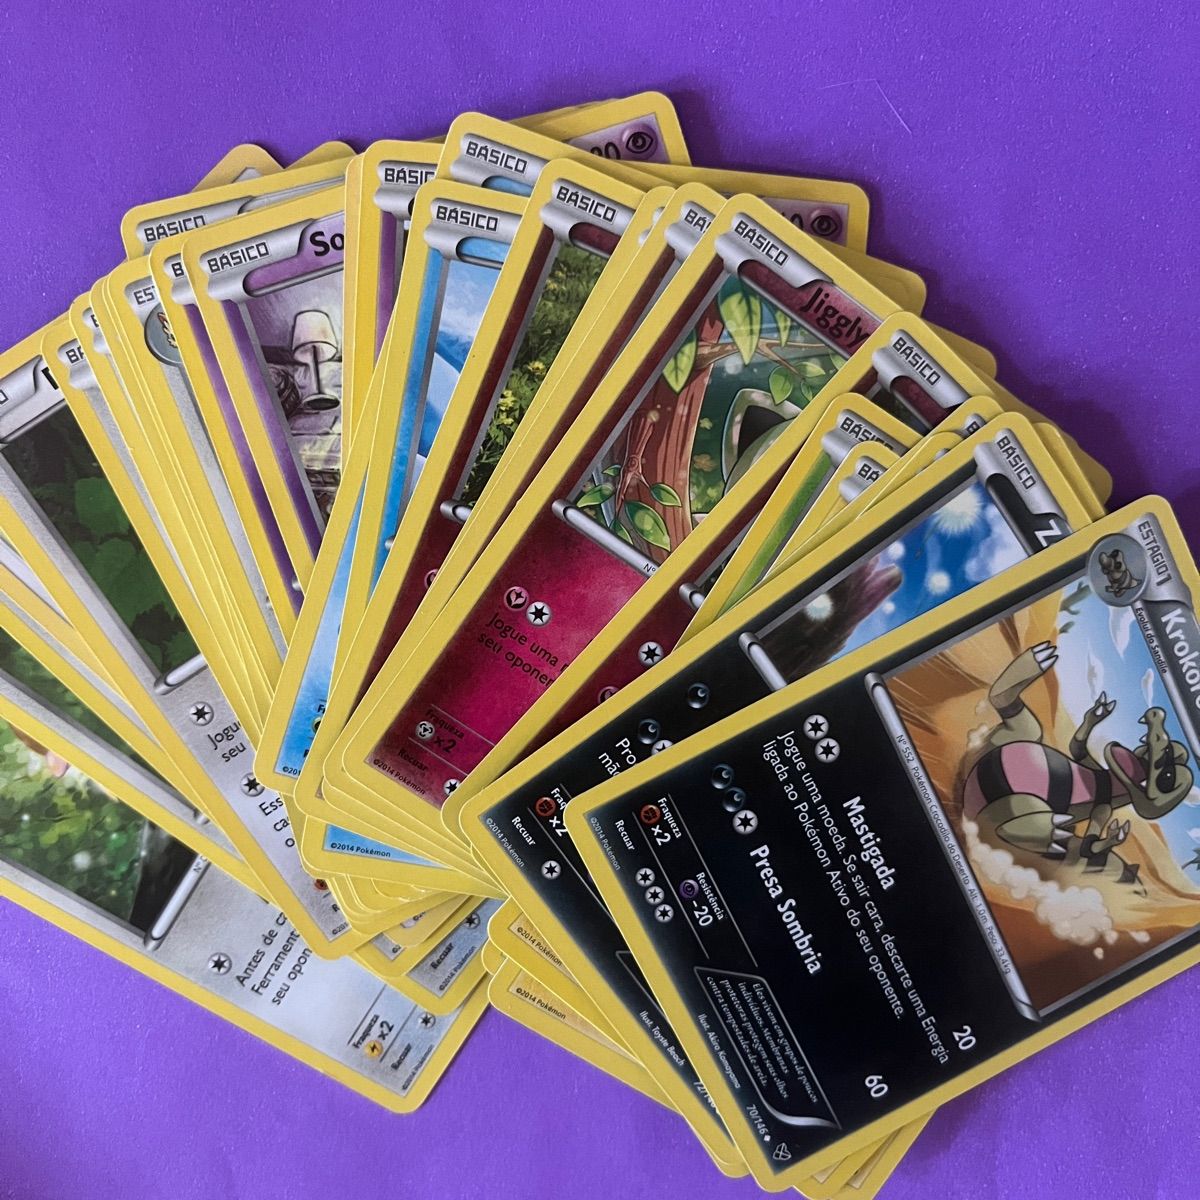 Masquerain (carta rara) - Pokémon TCG Cards (original em português)